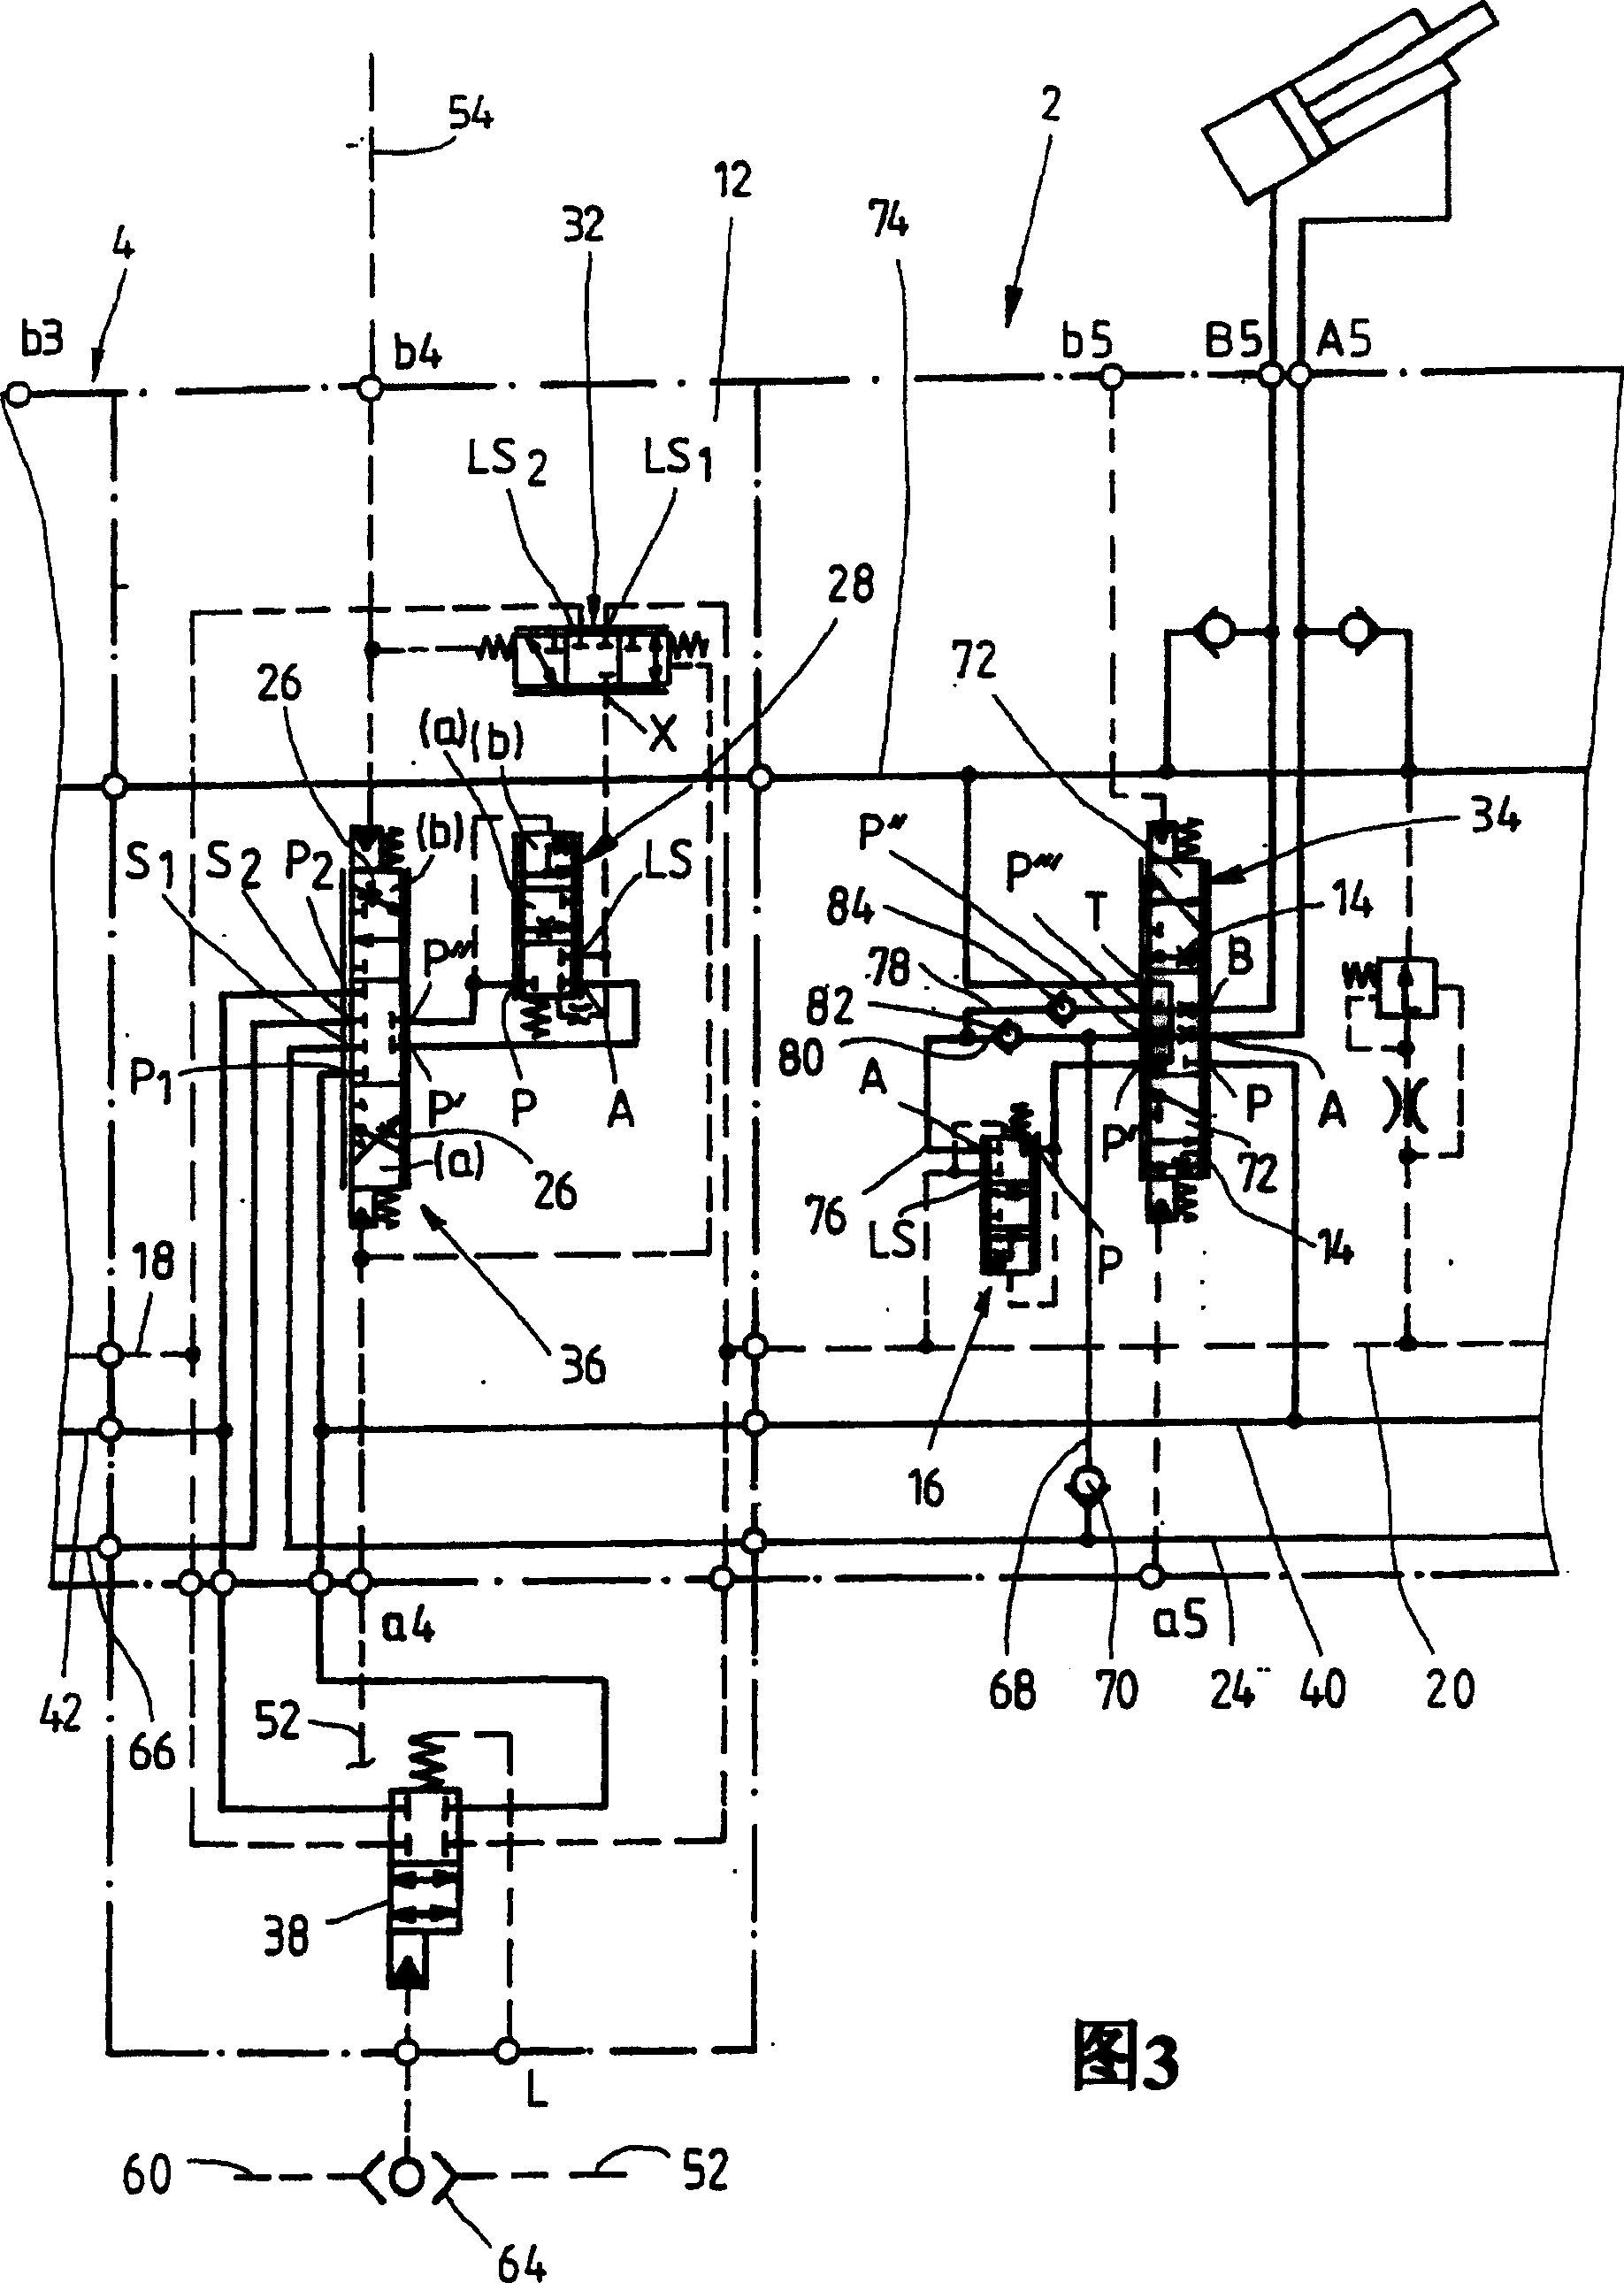 Hydraulic dual circuit system